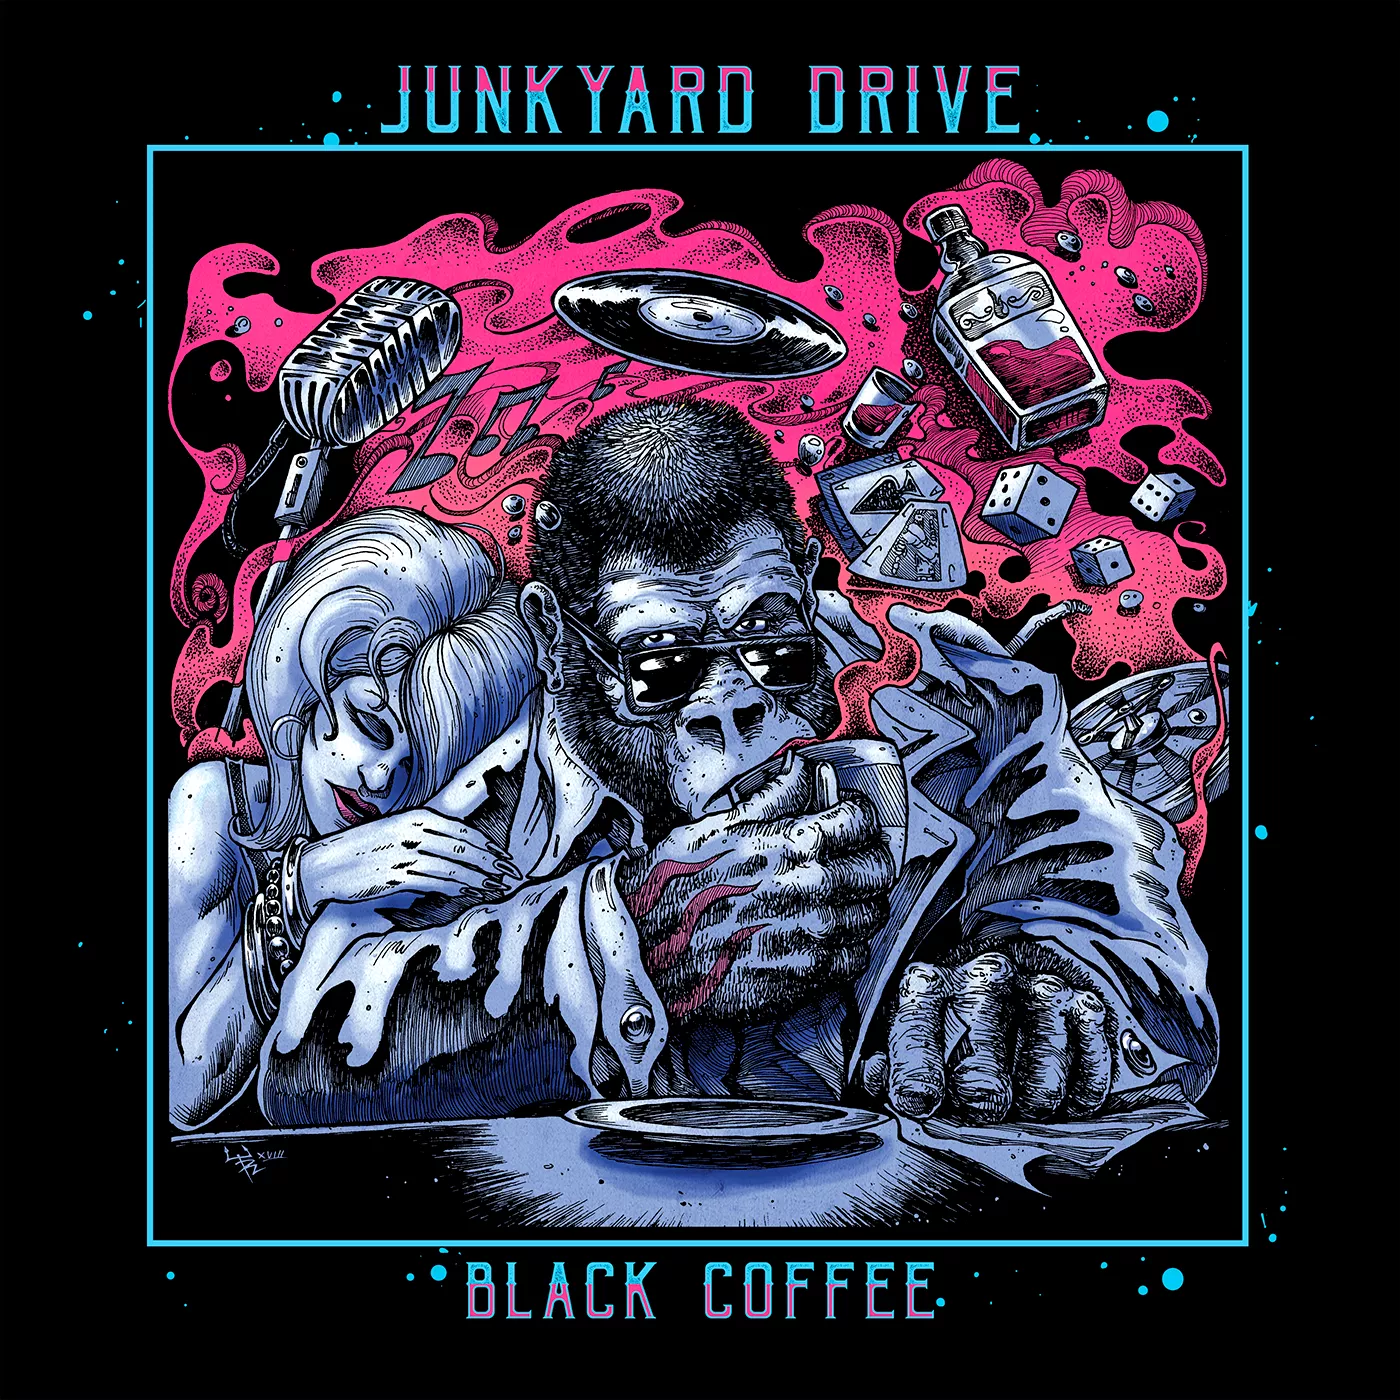 Black Coffee - Junkyard Drive